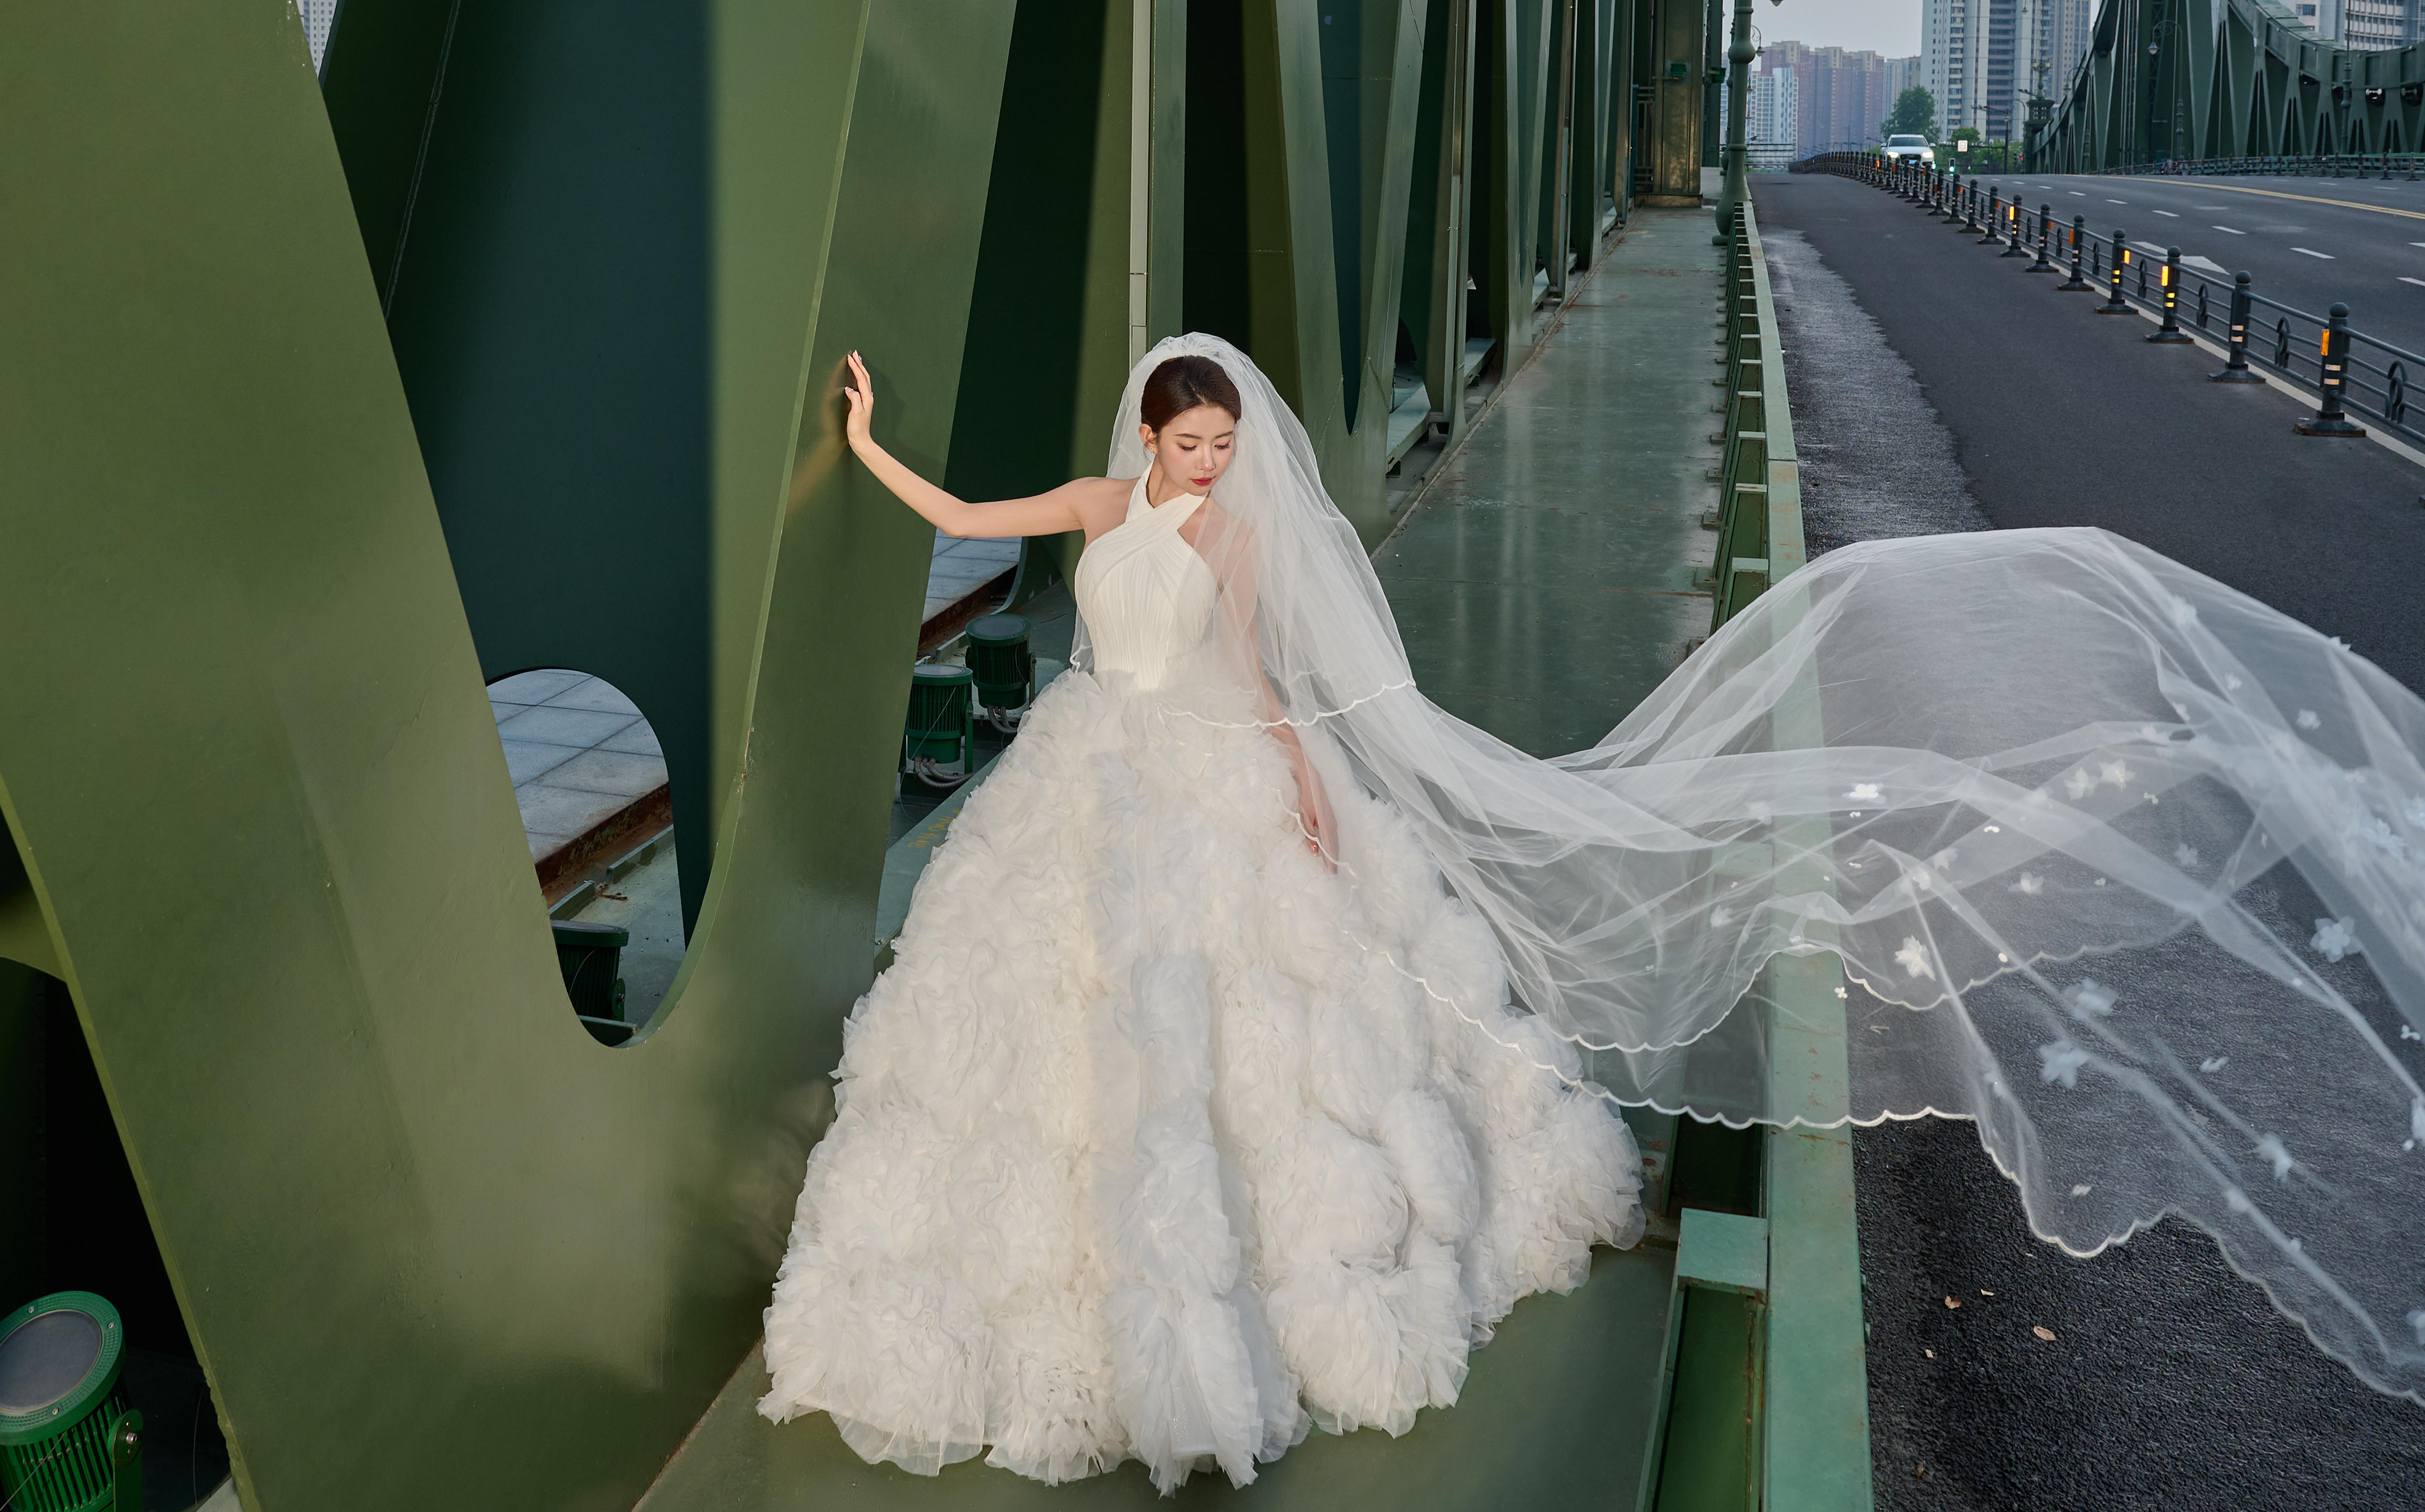 浪漫电影❗️不是伦敦❗️是南京🌉婚纱照太出片了